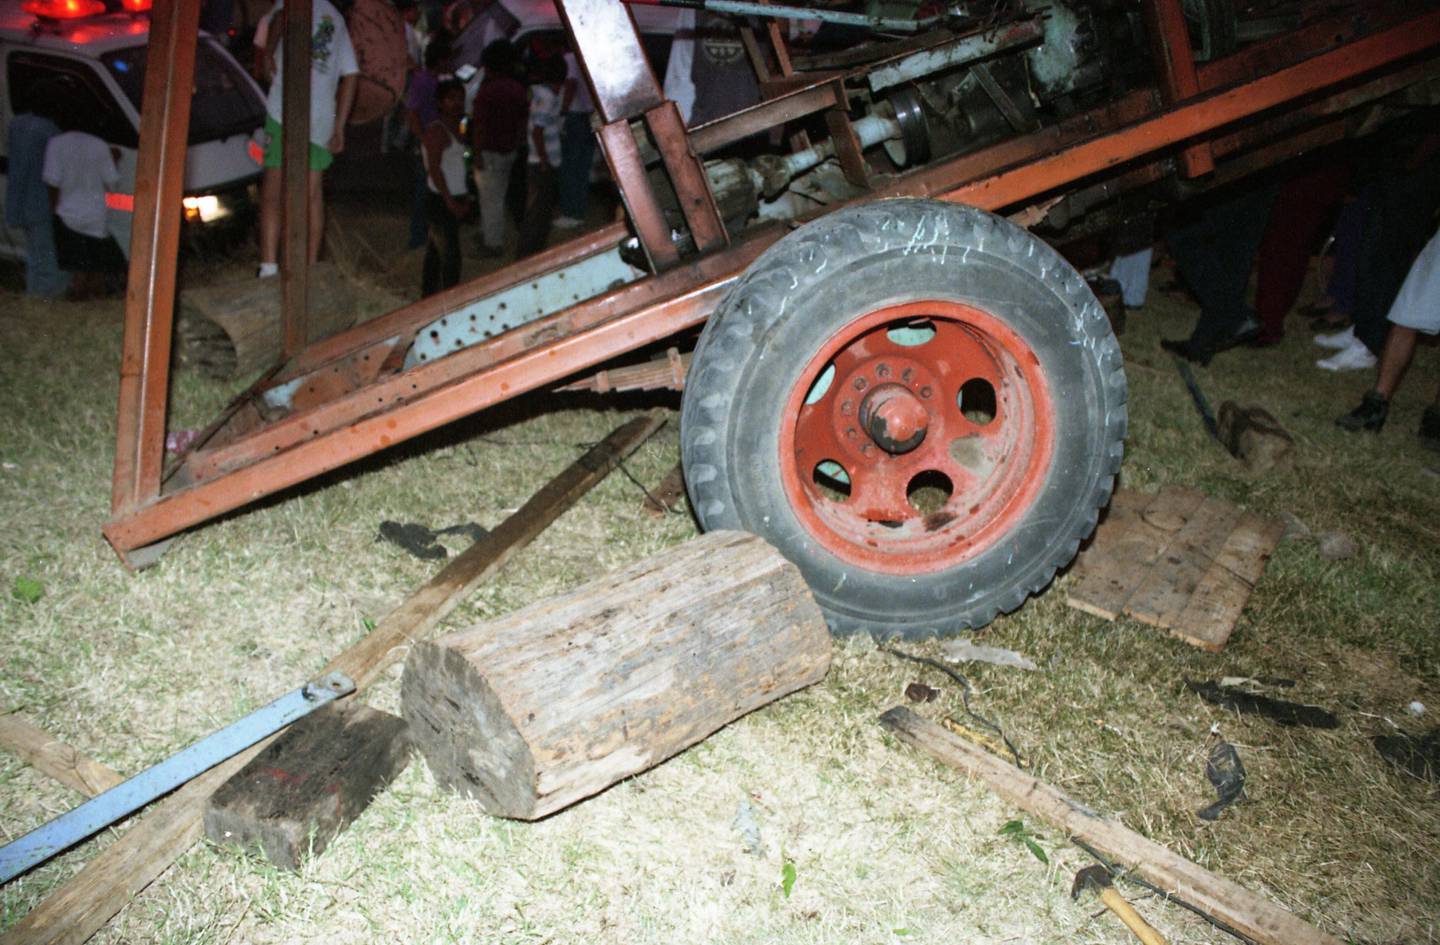 En abril de 1997 once menores de edad resultaron heridos por una falle en el juego mecánico de las sillas voladoras, esto durante un turno en San Miguel de Santo Domingo de Heredia. Foto Archivo.